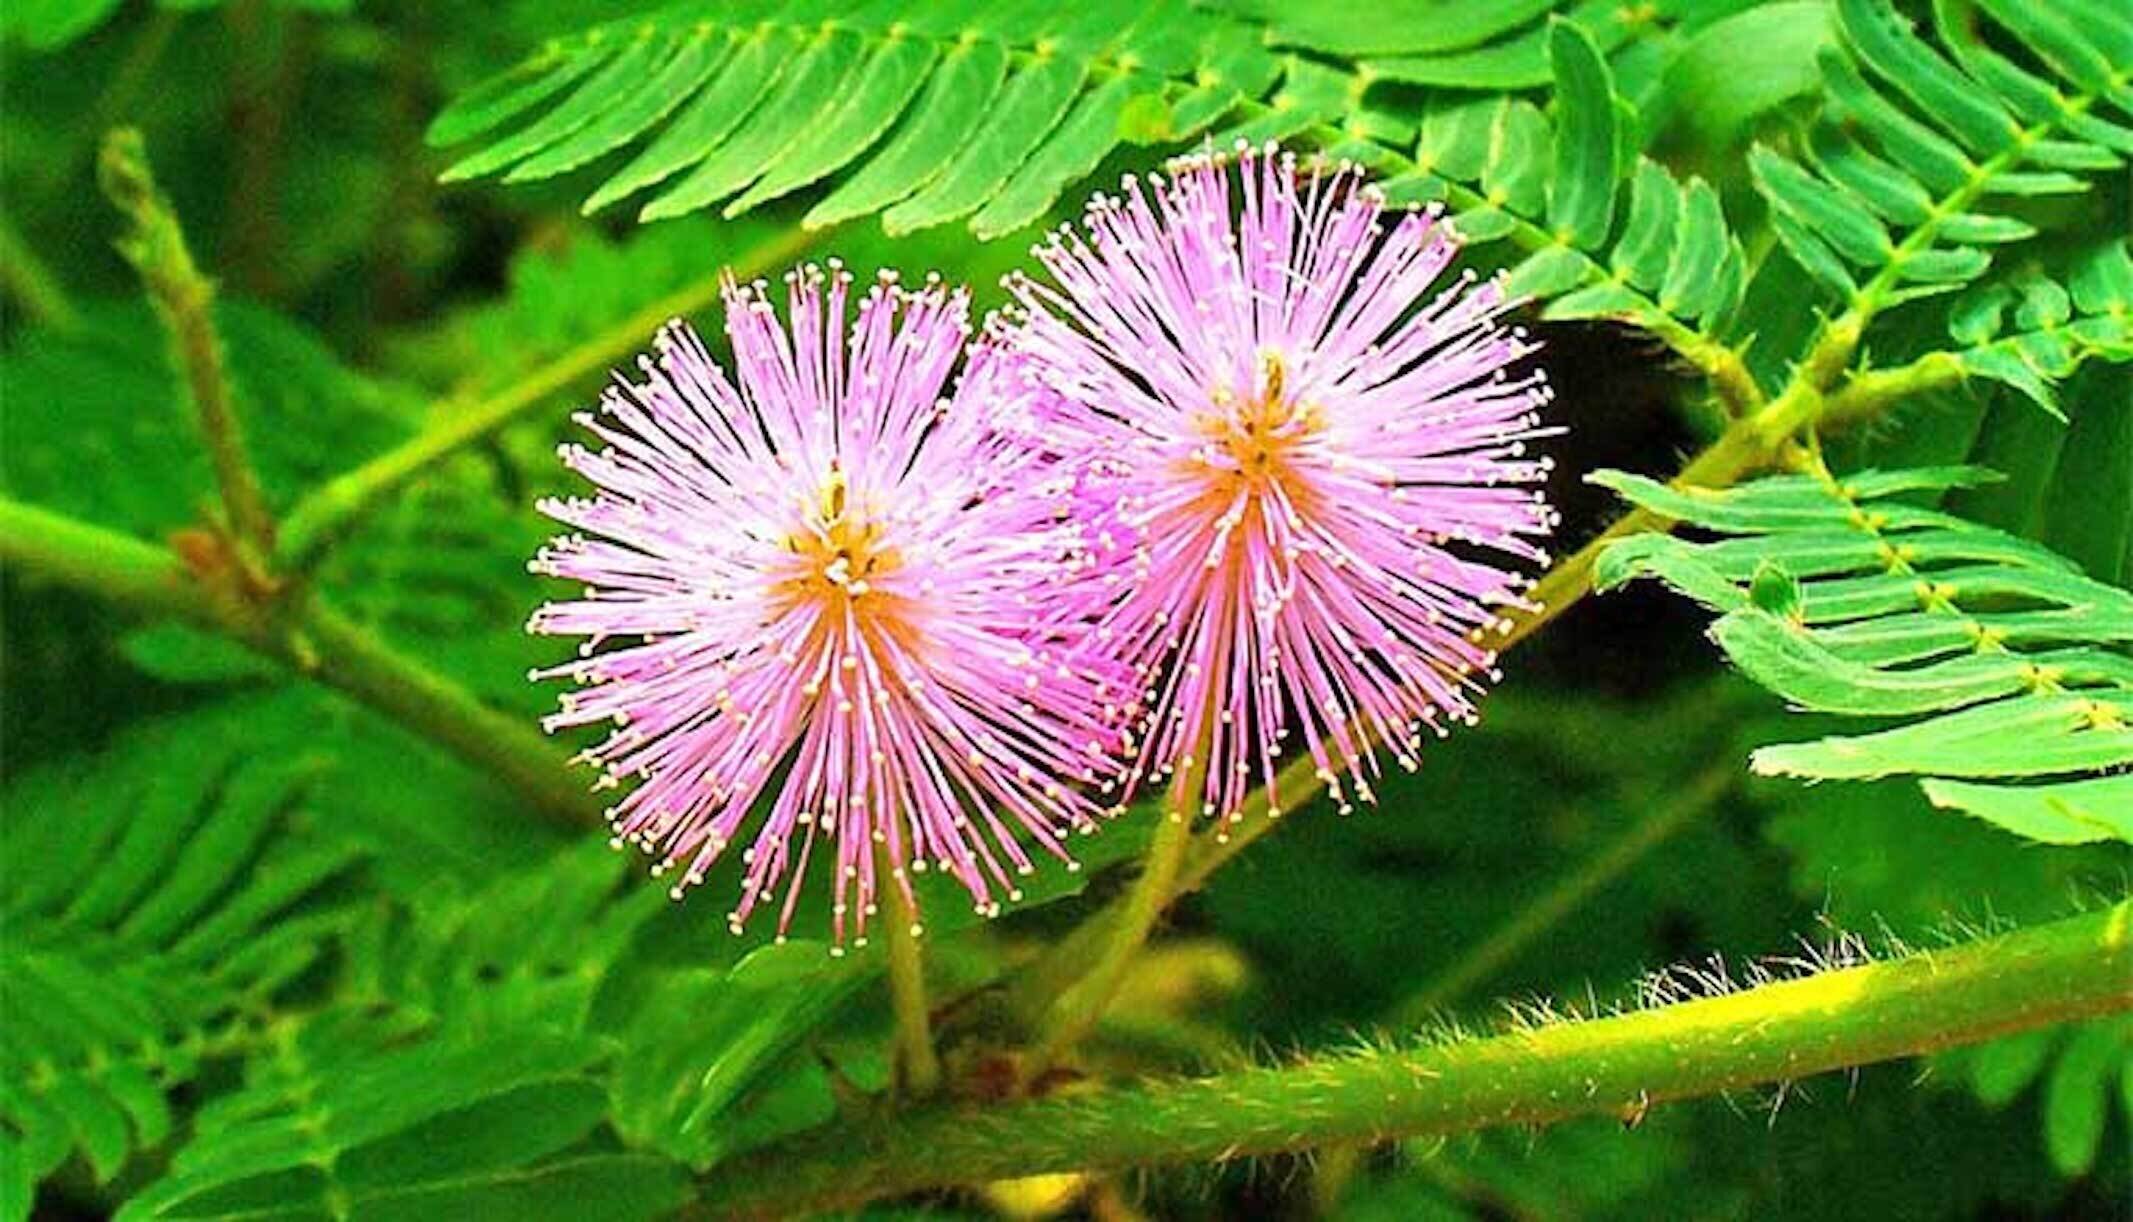 Hoa xấu hổ còn có tên thường gọi: hoa trinh nữ, u thảo, hàm ưu mộc, thẹn mộc thảo, hoa xấu hổ.